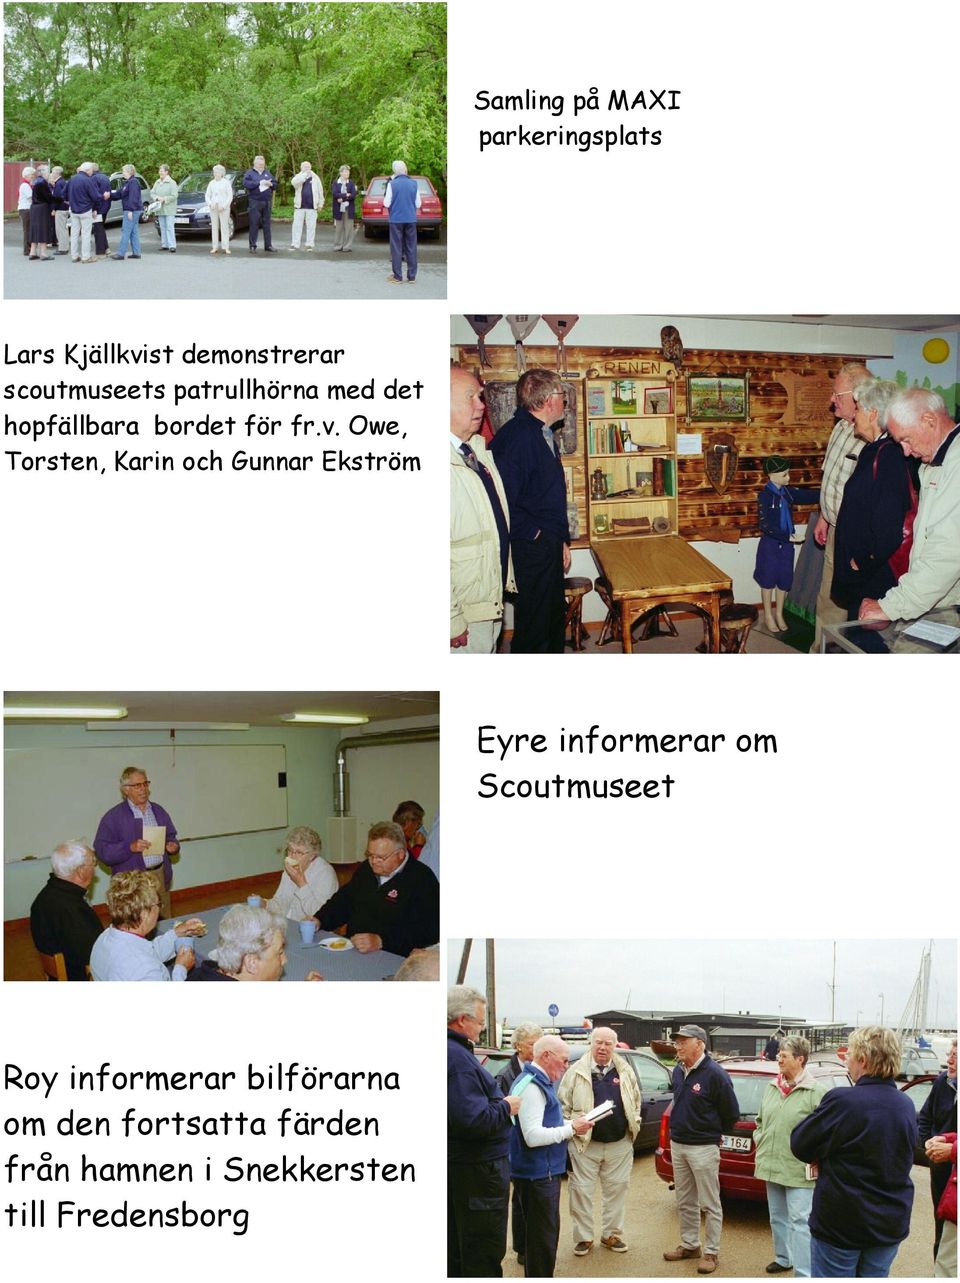 Owe, Torsten, Karin och Gunnar Ekström Eyre informerar om scoutmuseet